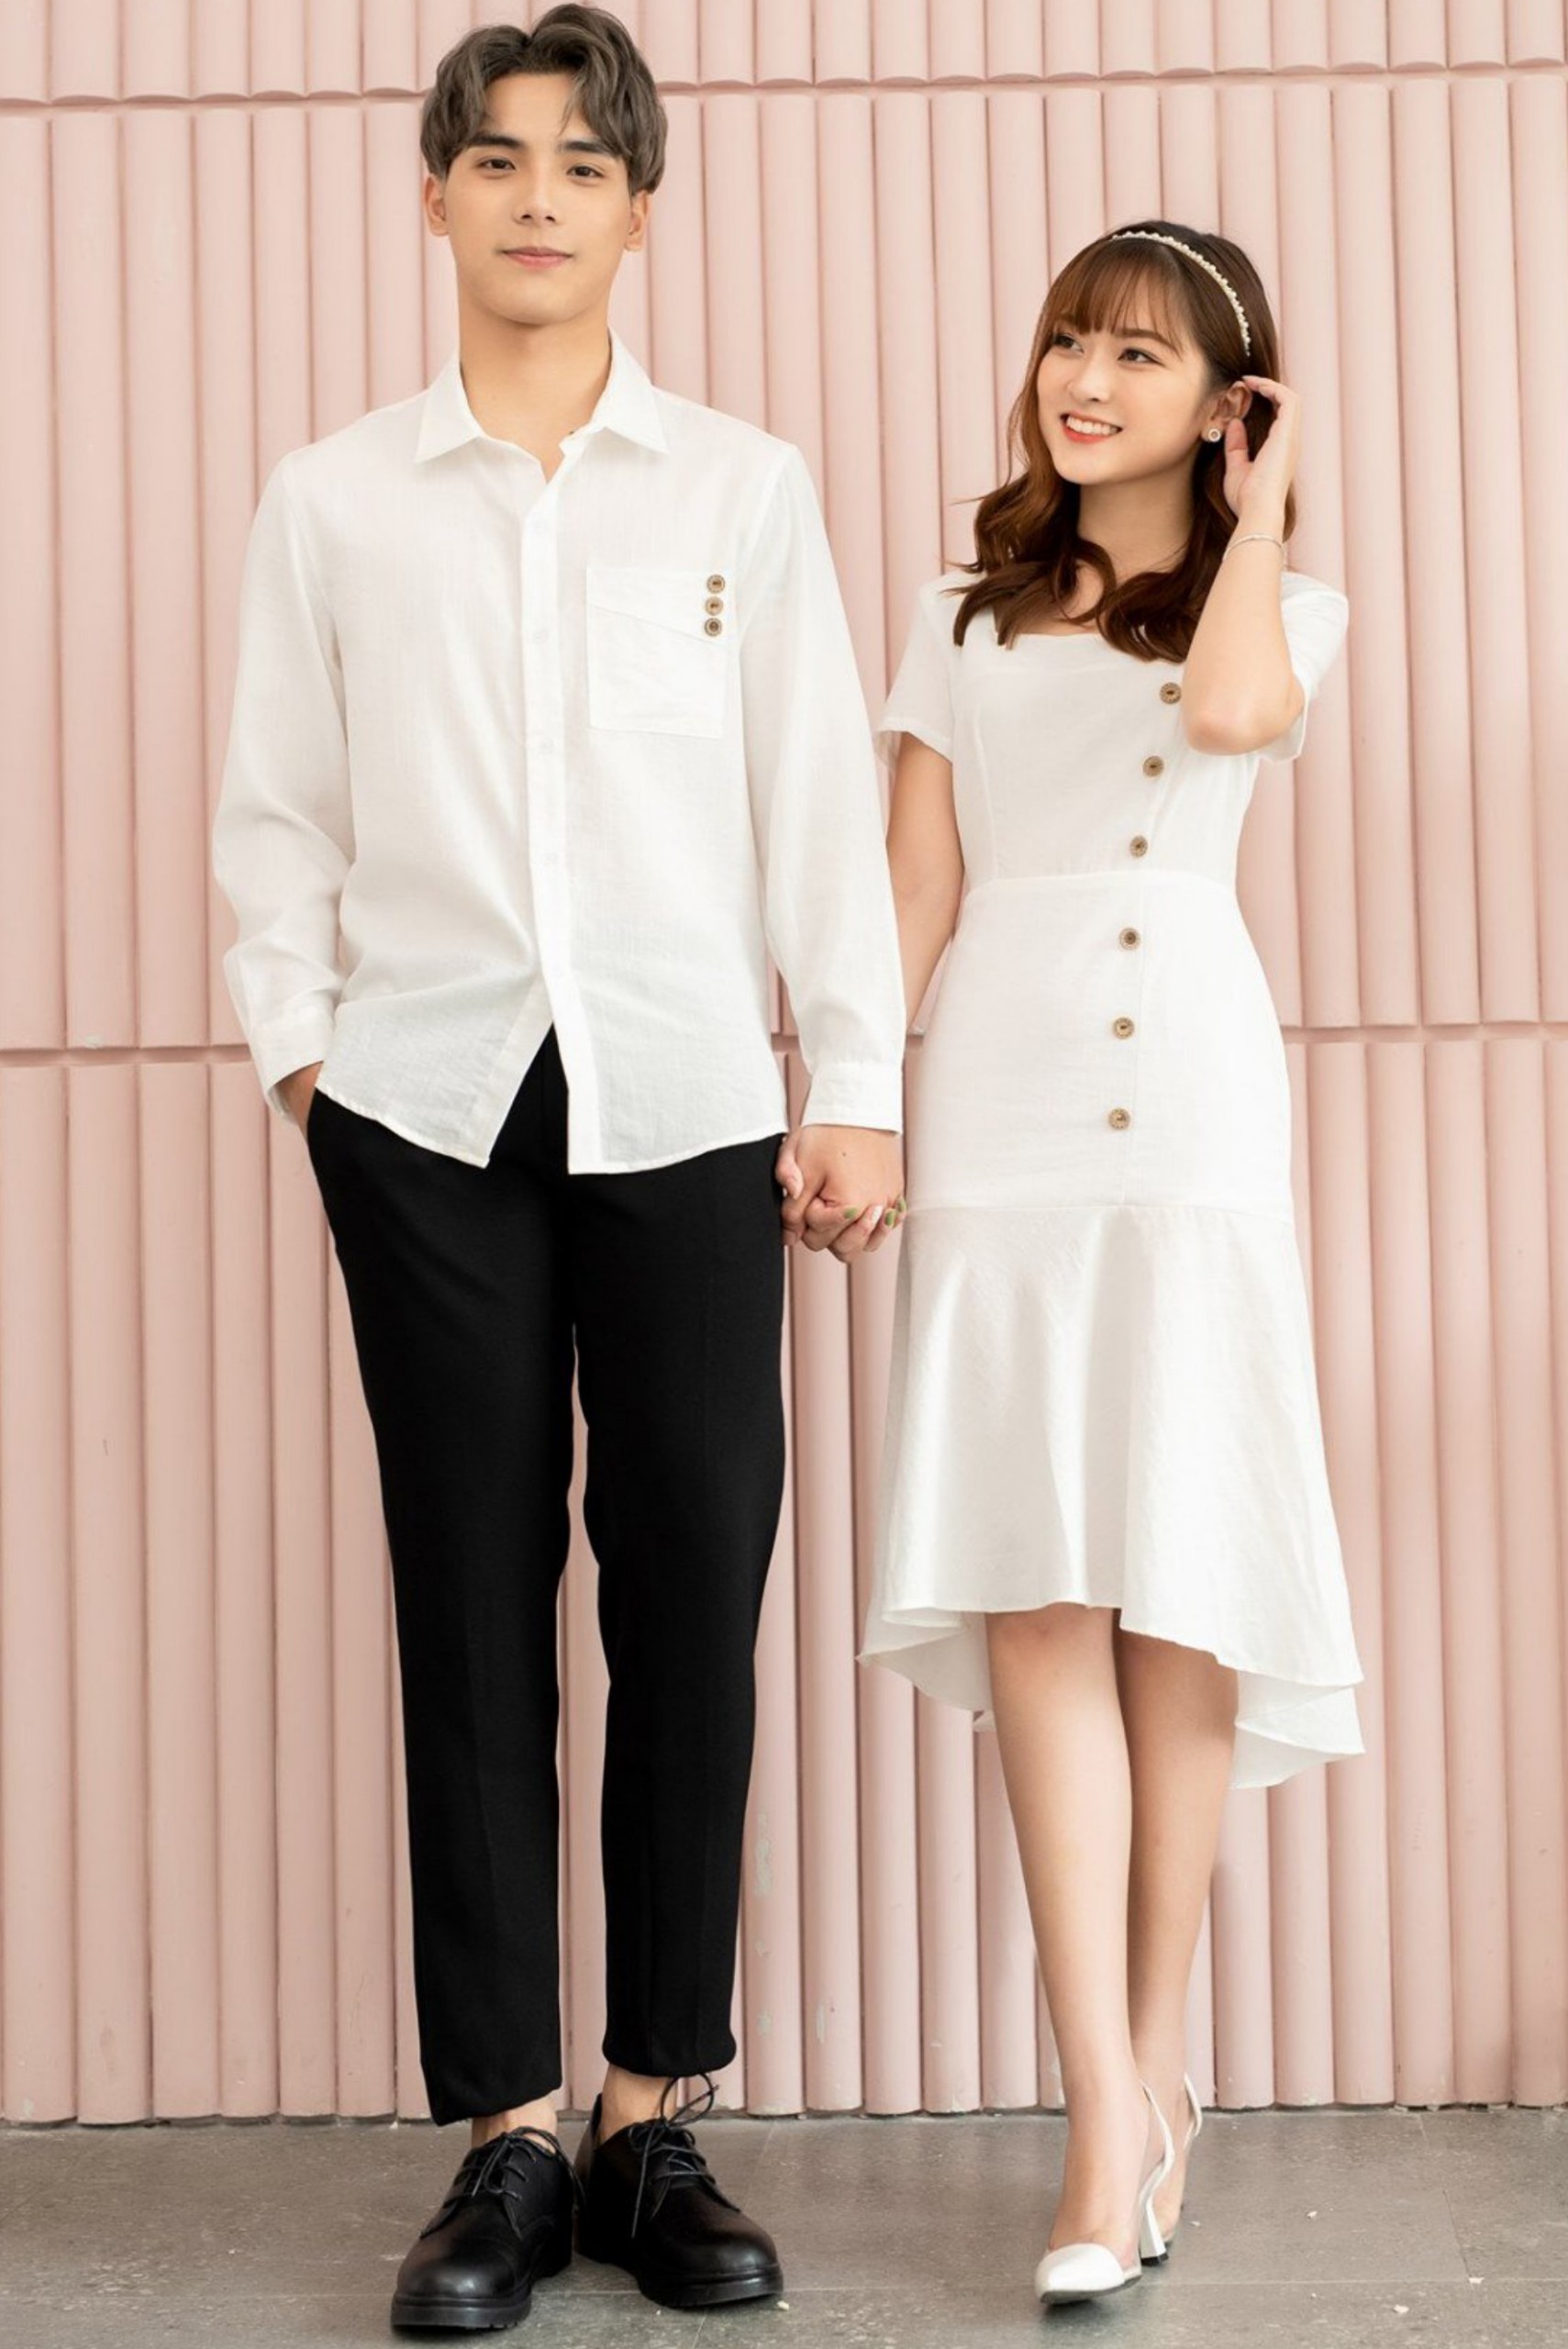 Đồ đôi nam nữ Set áo váy sơ mi Hàn Quốc dáng dài(có ảnh thật) | Shopee Việt  Nam